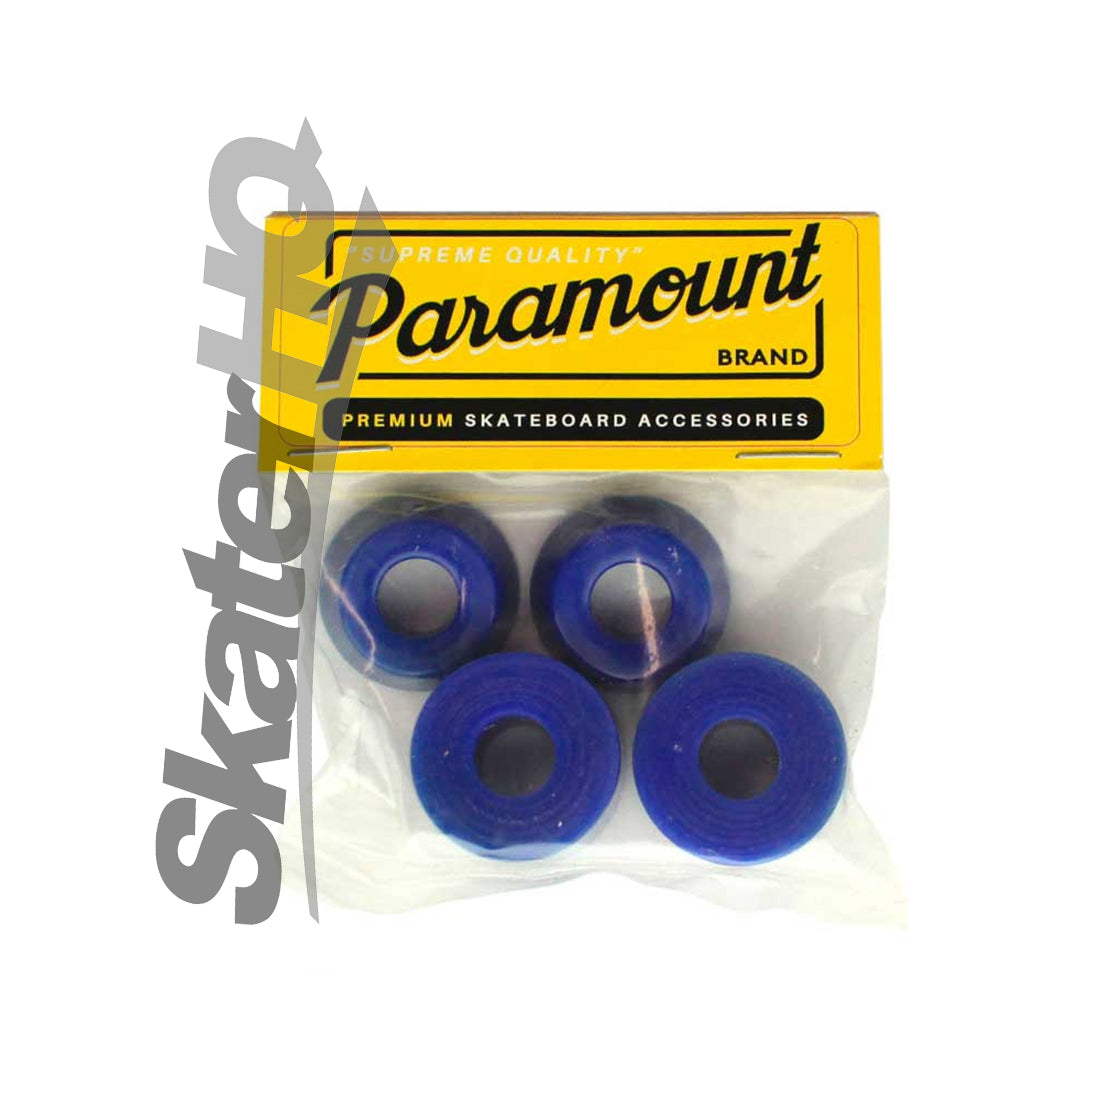 Paramount Bushings 4pk - 92a Soft Skateboard Hardware and Parts